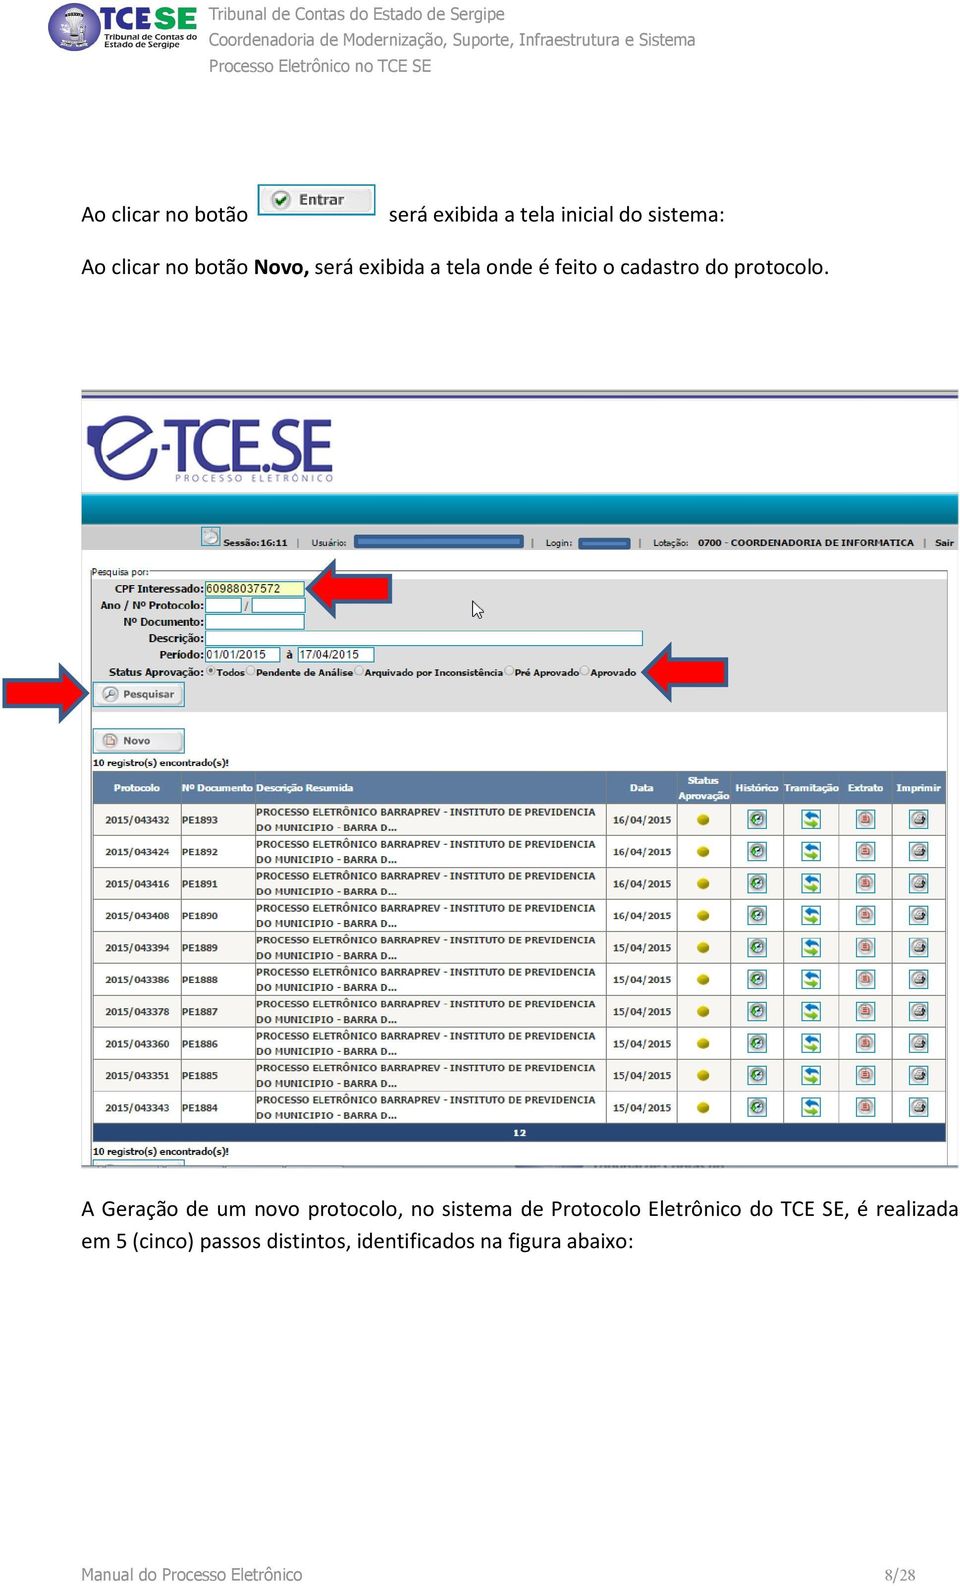 A Geração de um novo protocolo, no sistema de Protocolo Eletrônico do TCE SE, é